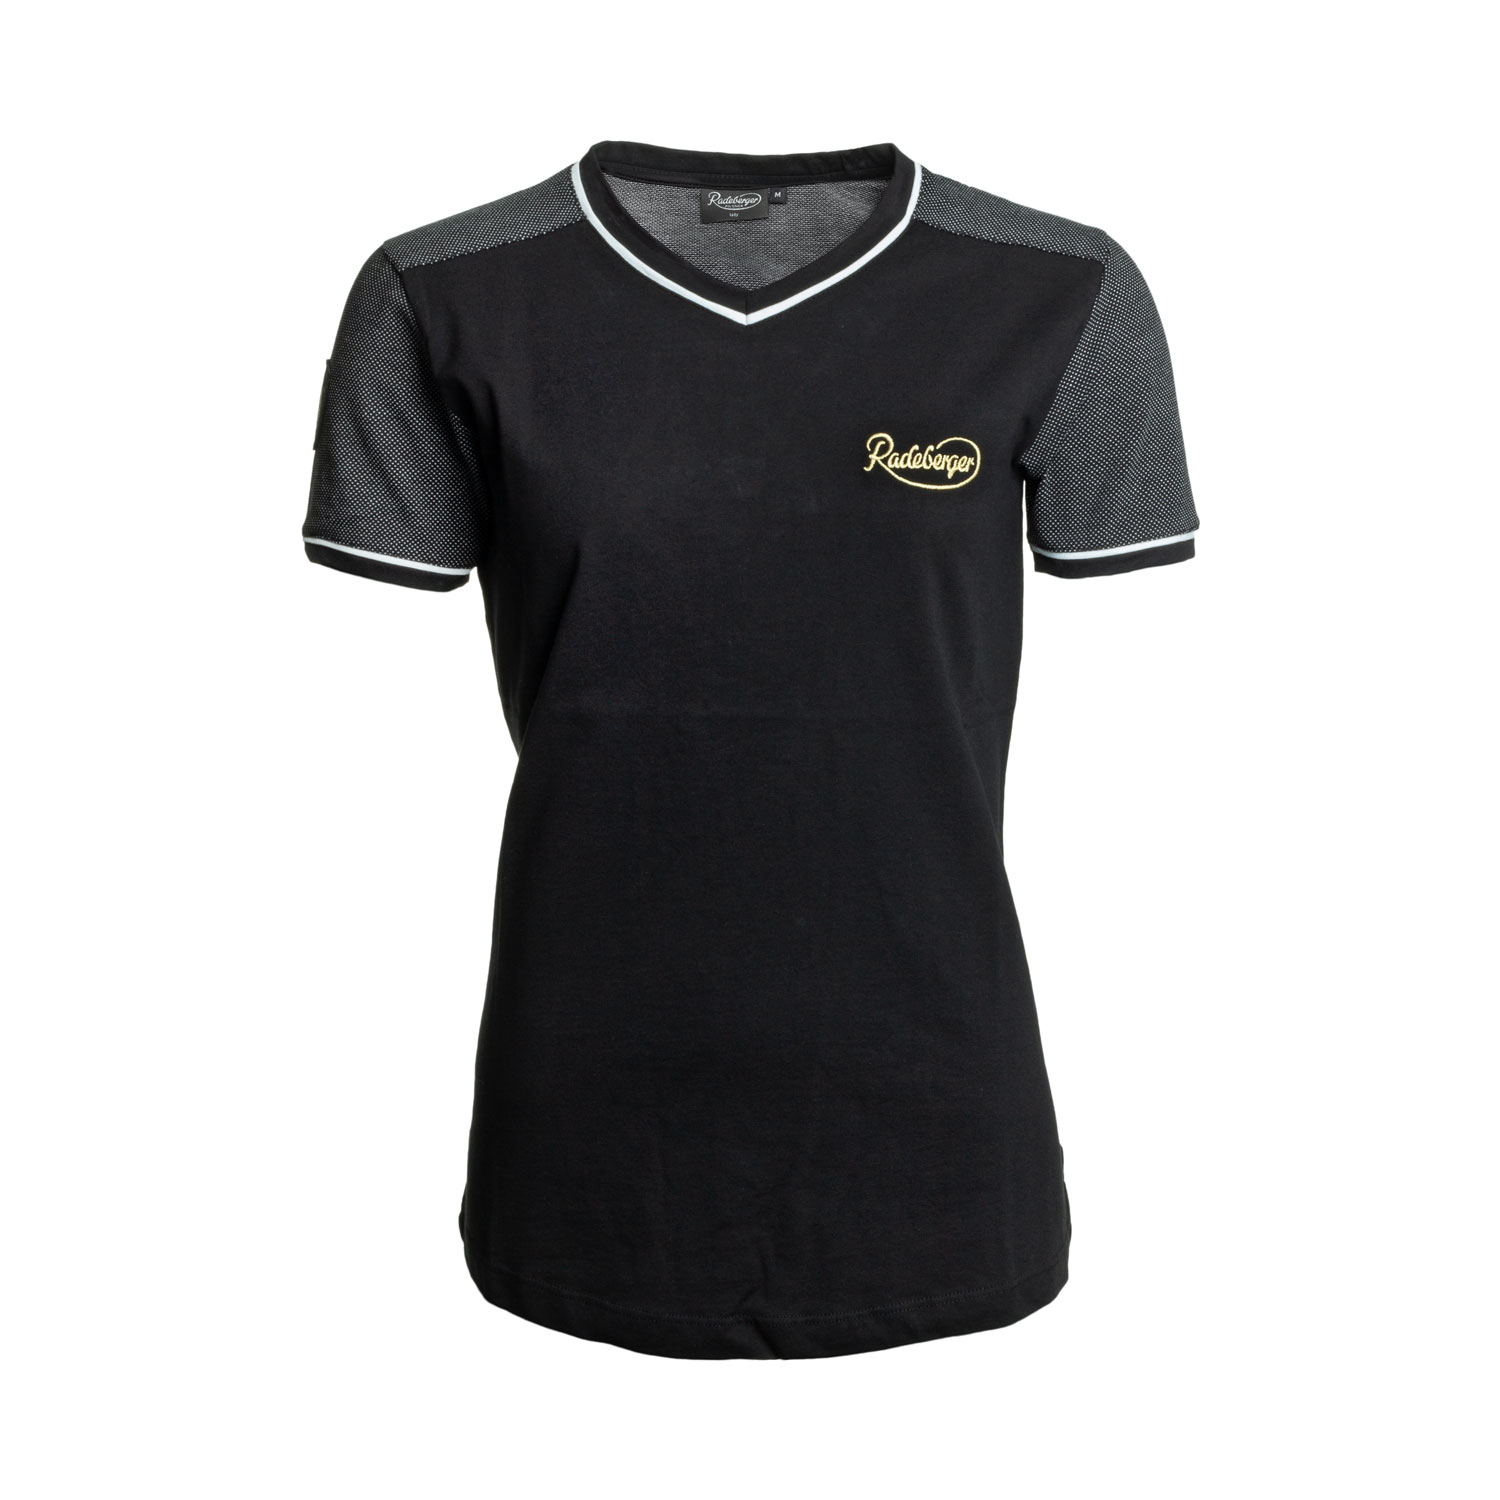 Radeberger T-Shirt "New Collection", Damen